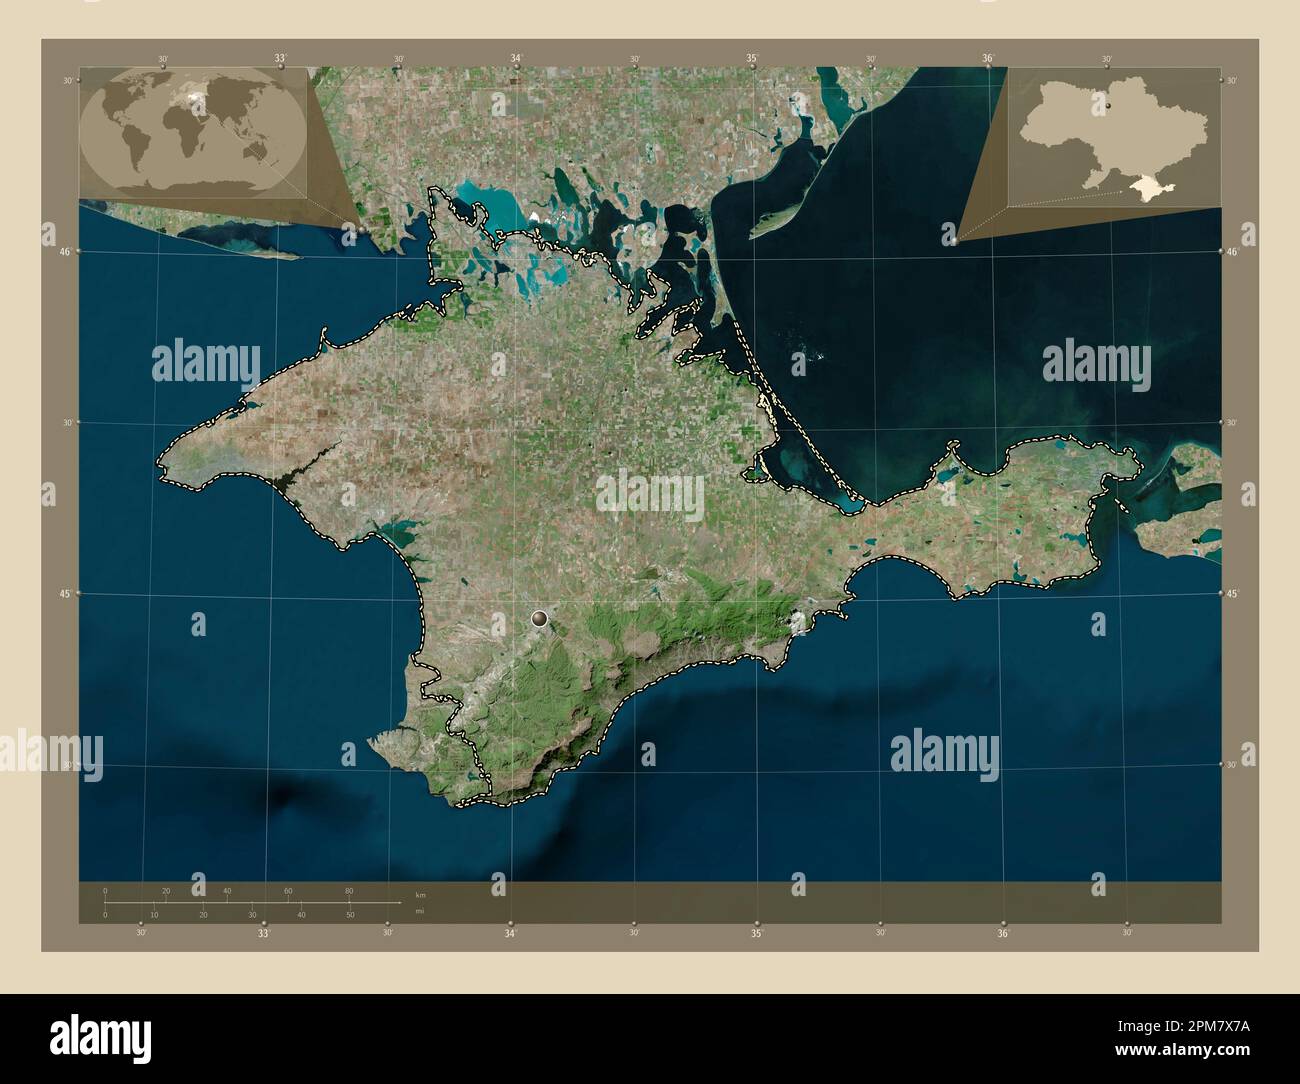 Krim, autonome republik Ukraine. Hochauflösende Satellitenkarte. Eckkarten für zusätzliche Standorte Stockfoto